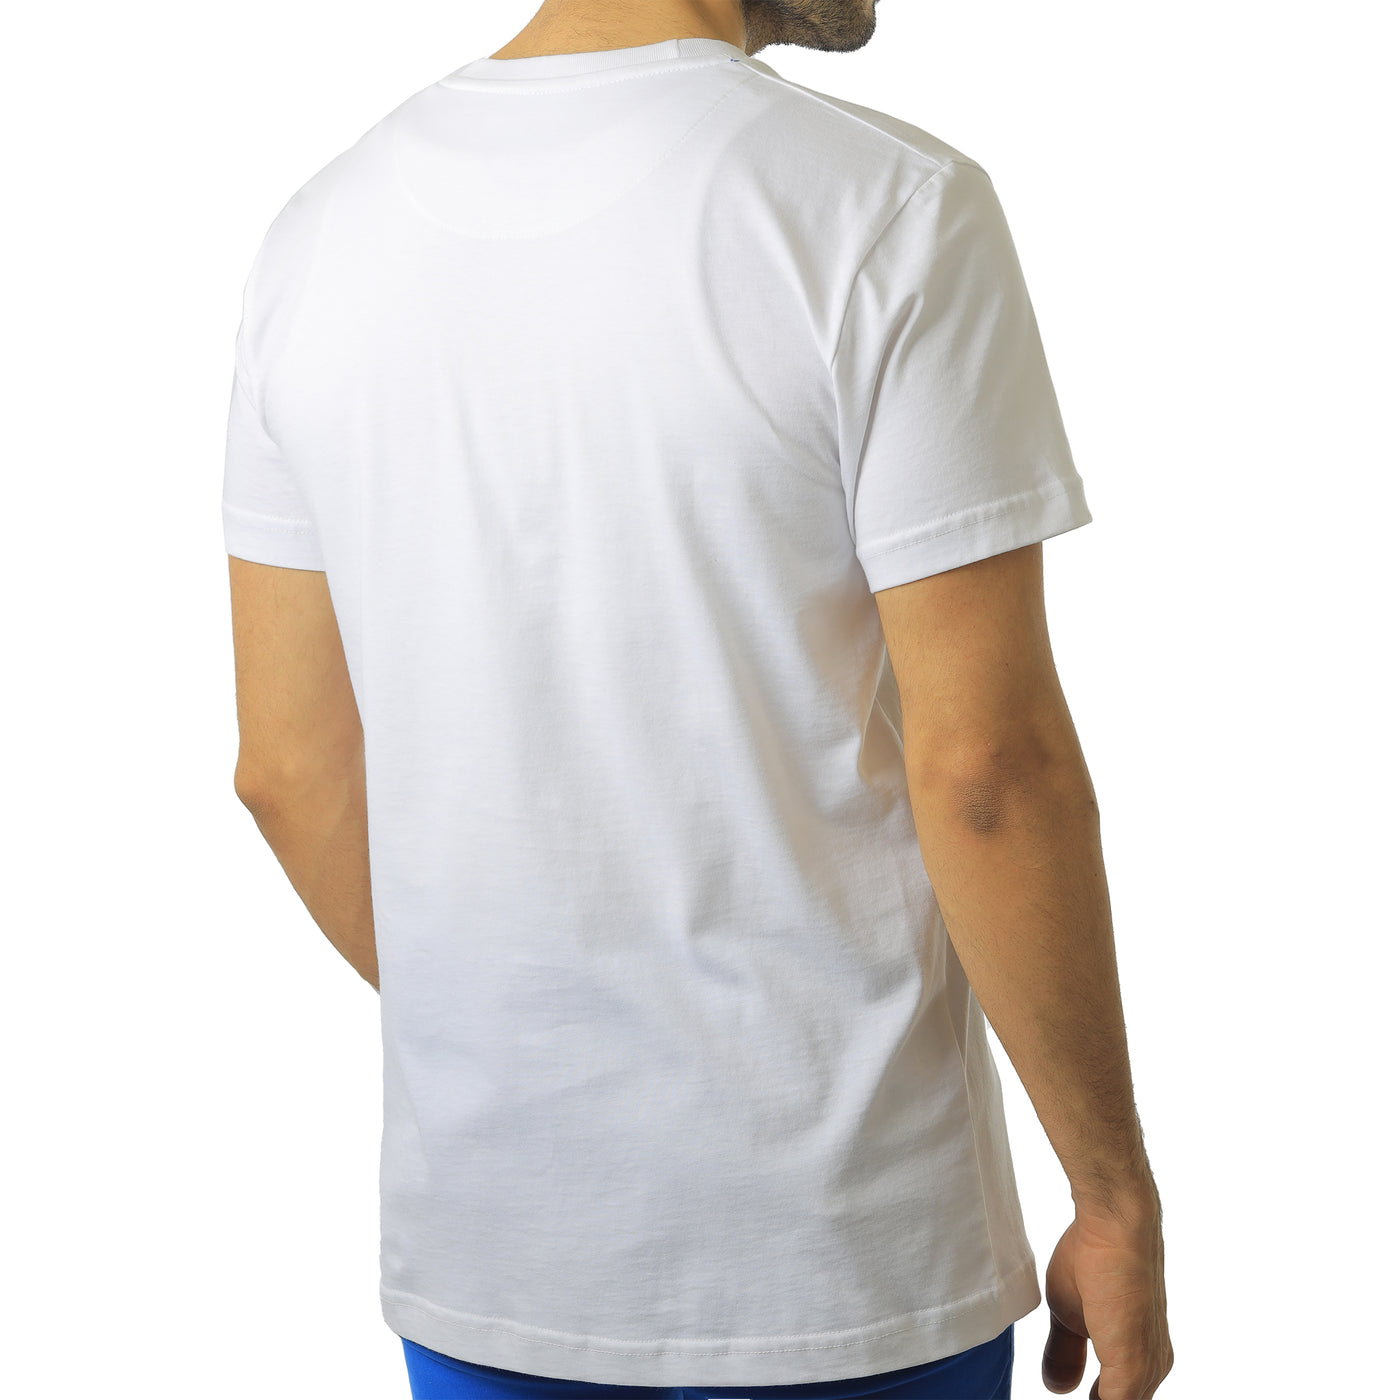 White round T-shirt